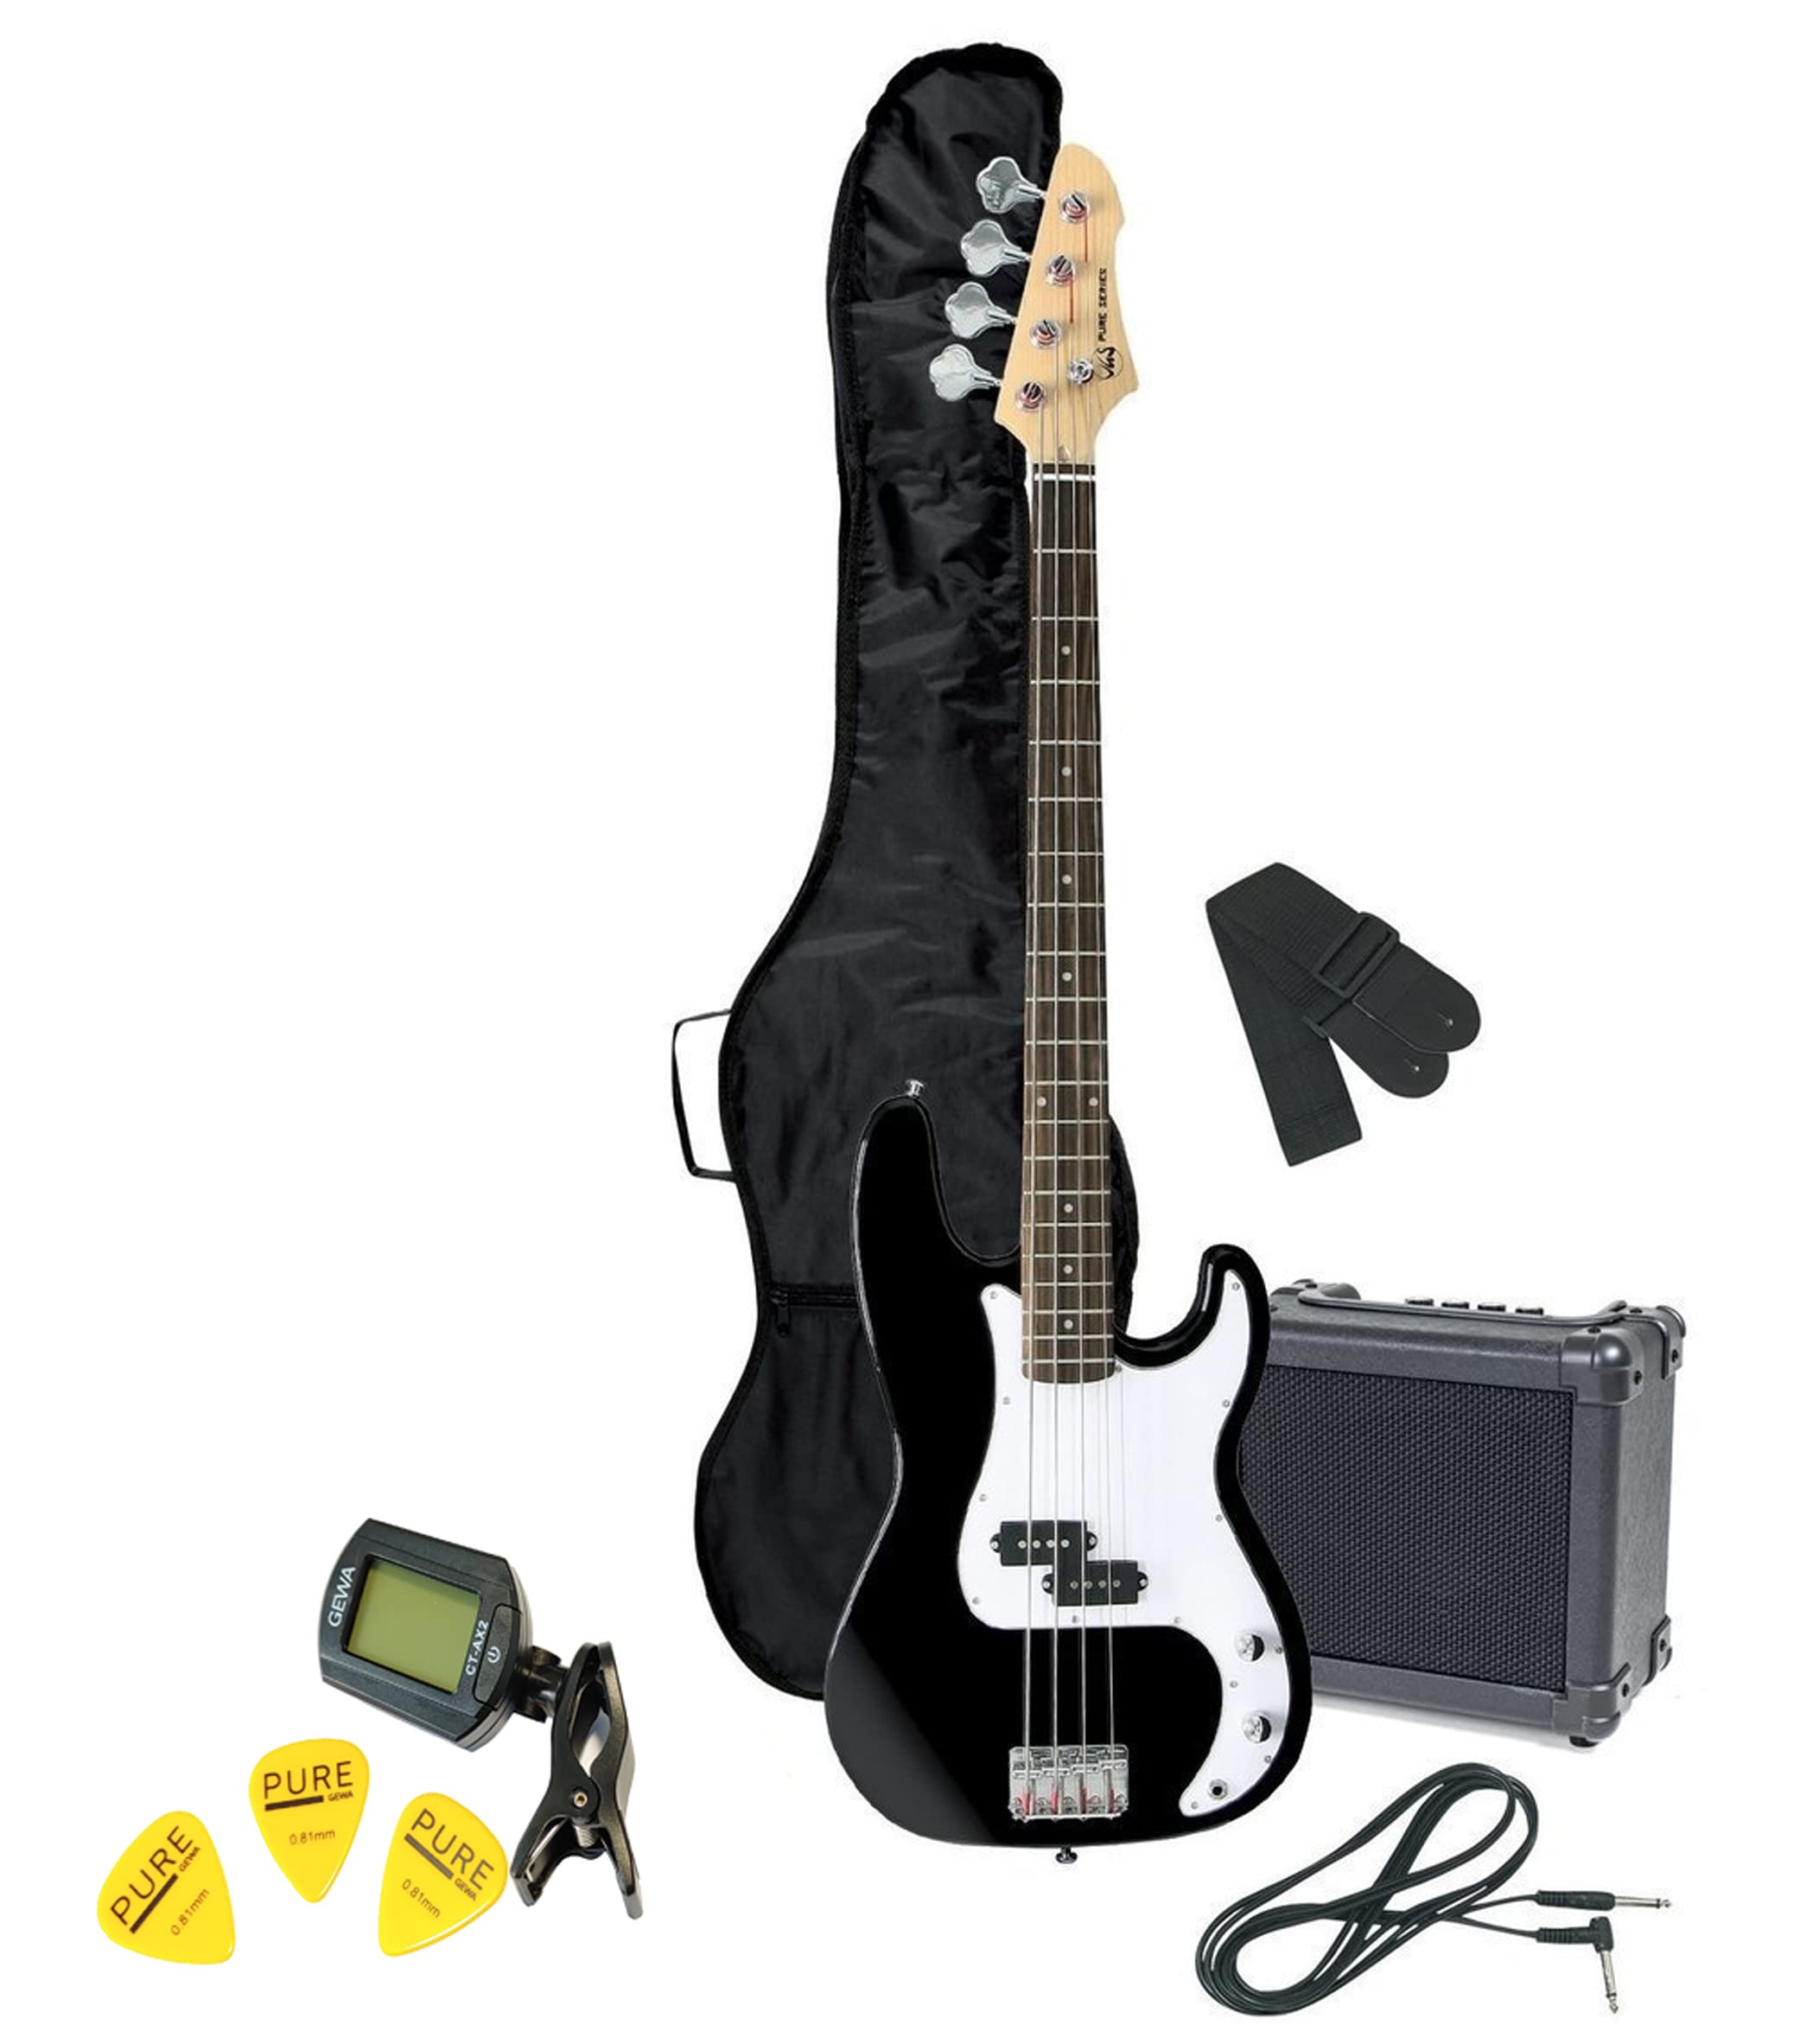 GEWA E-Bass Pack schwarz RCB-100 inkl. Verstärker, Tasche, Tuner, Gurt, Kabel, Plektren - PS502570 - ***NEU***